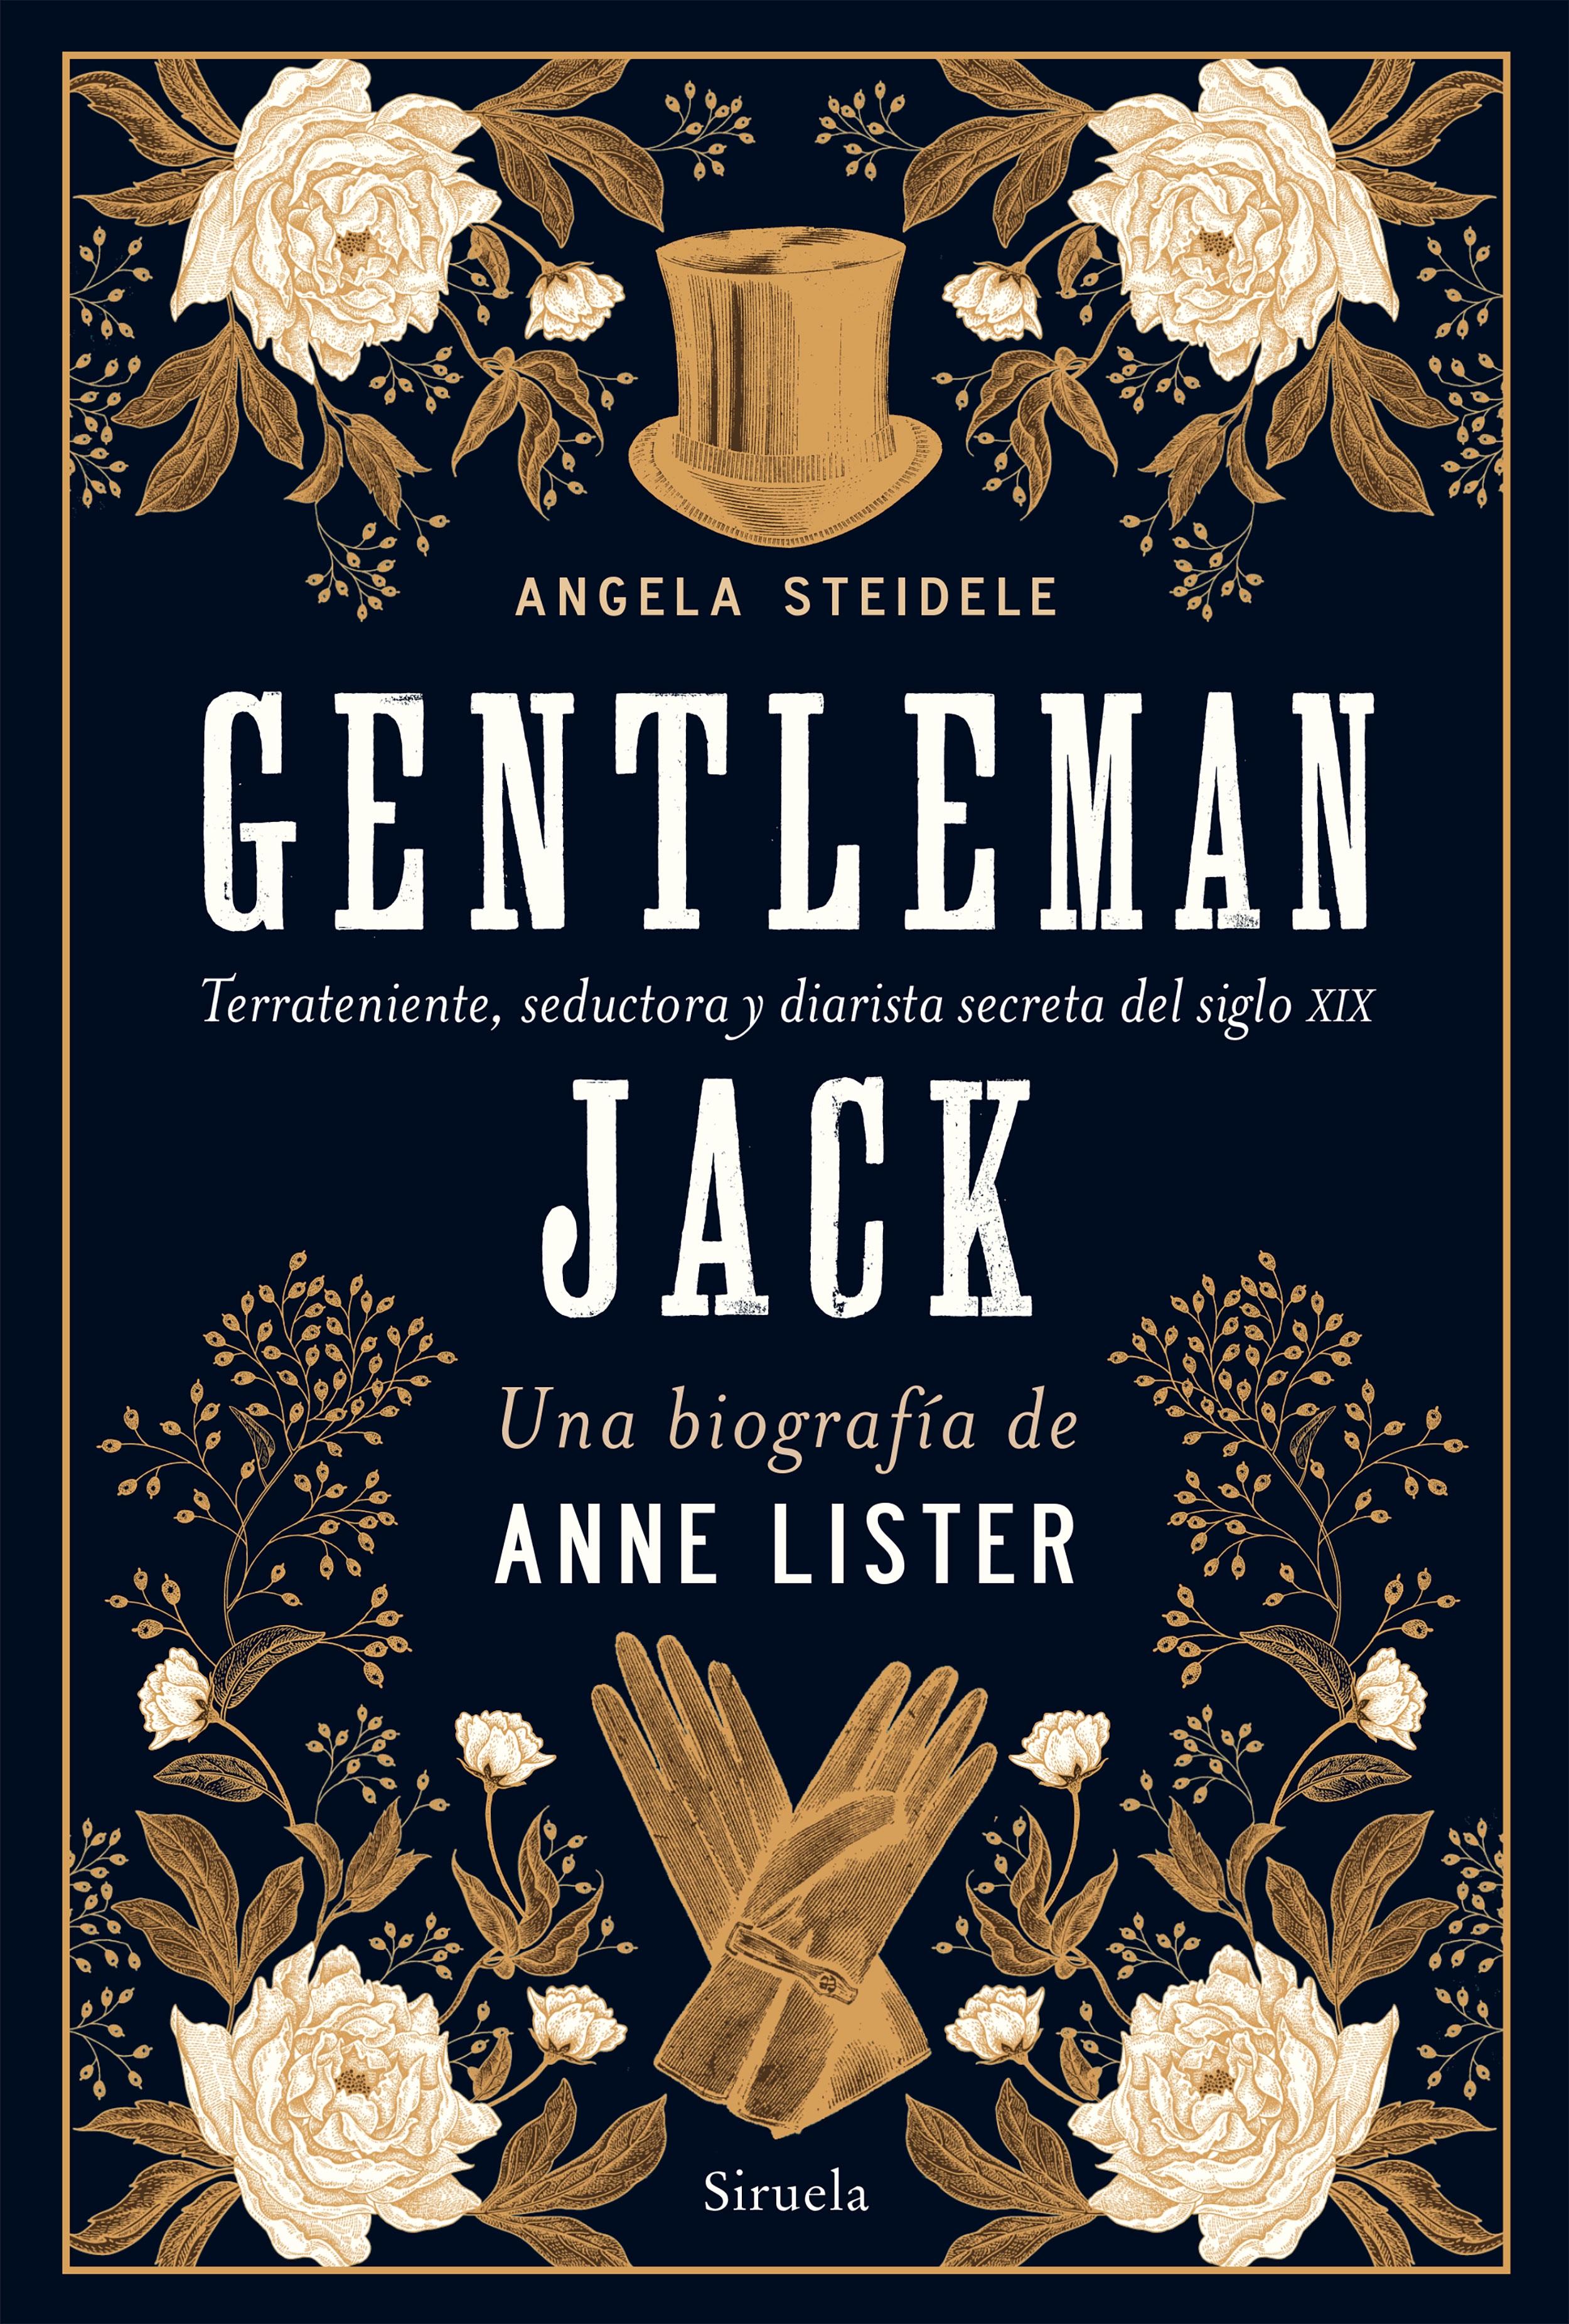 Gentleman Jack. Una biografía de Anne Lister "Terrateniente, seductora y diarista secreta del siglo XIX"